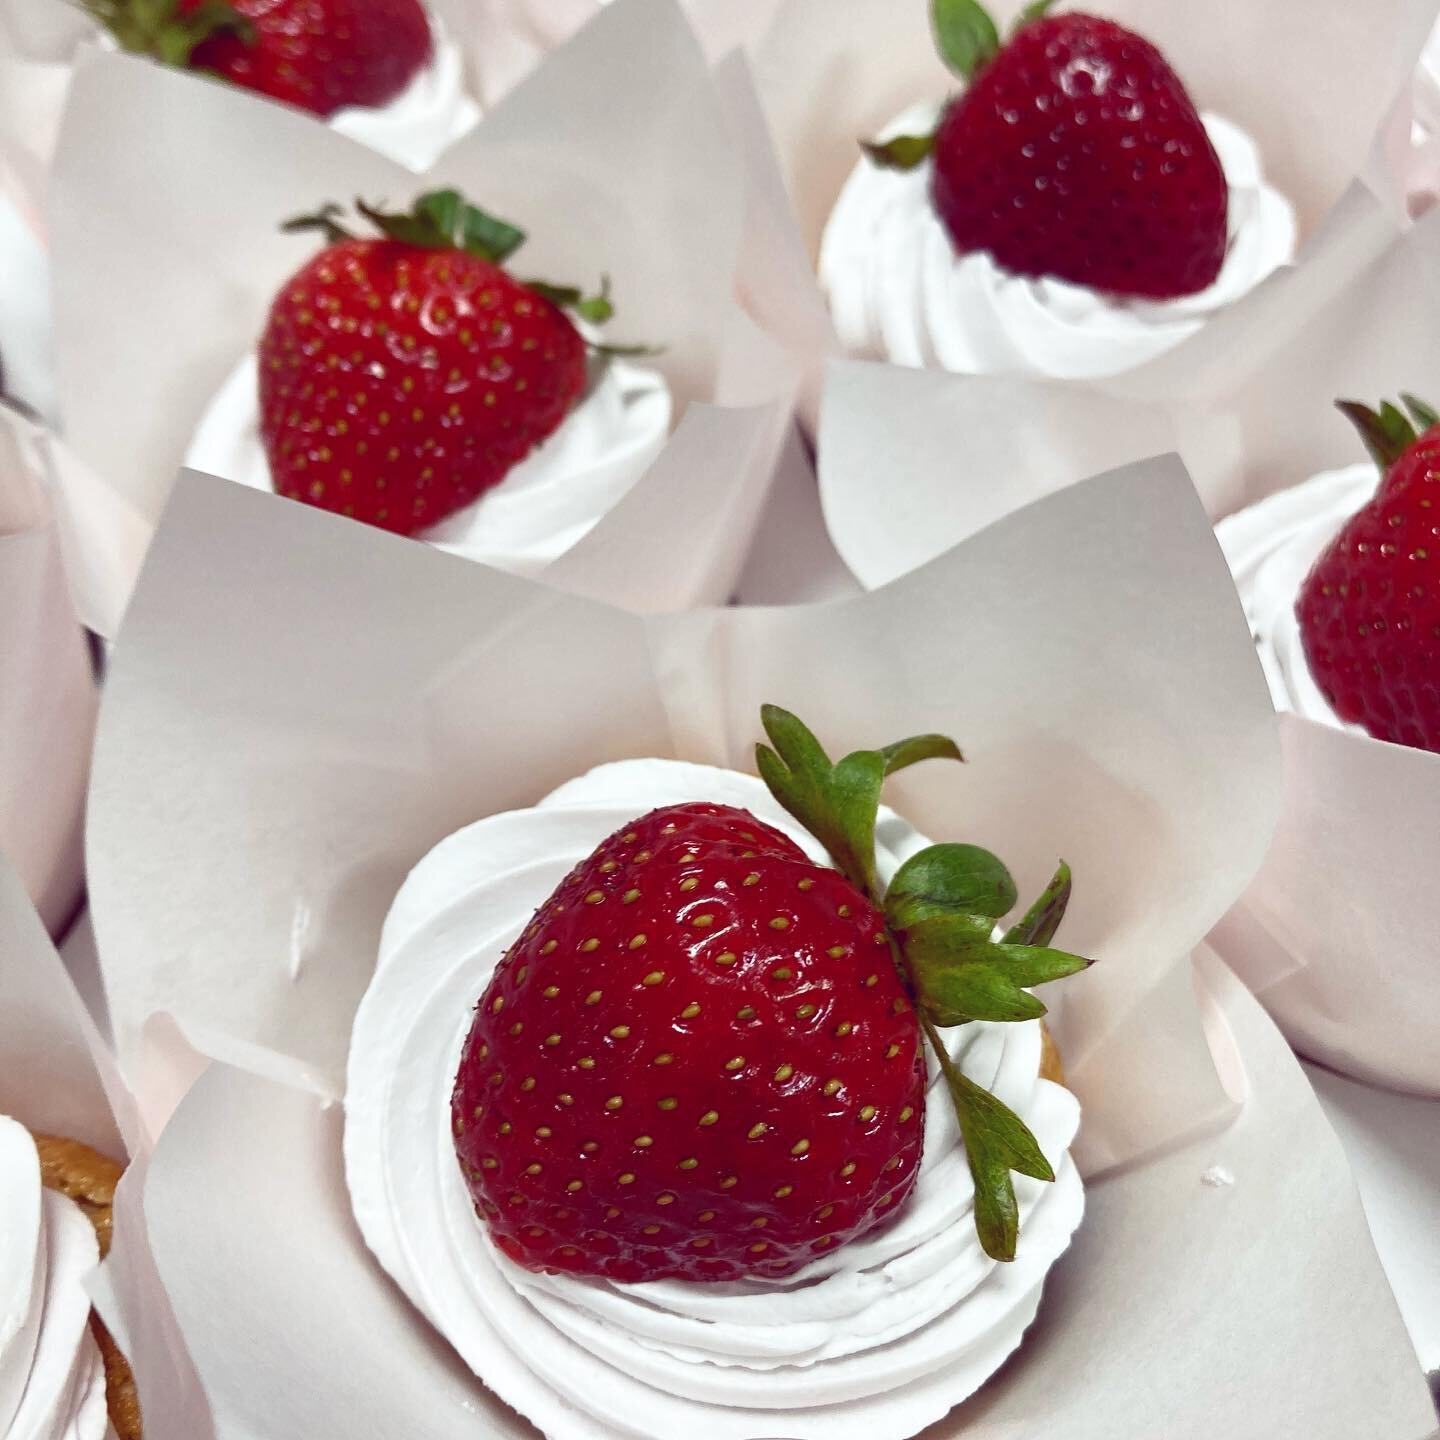 Summer fruit.
1, Strawberry Cassata cupcakes 🍓
2, an experiment in progress. Look for a Peach Frangipane tart next weekend!🍑

#glutenfree #vegan #clevelandvegan #clevelandglutenfree